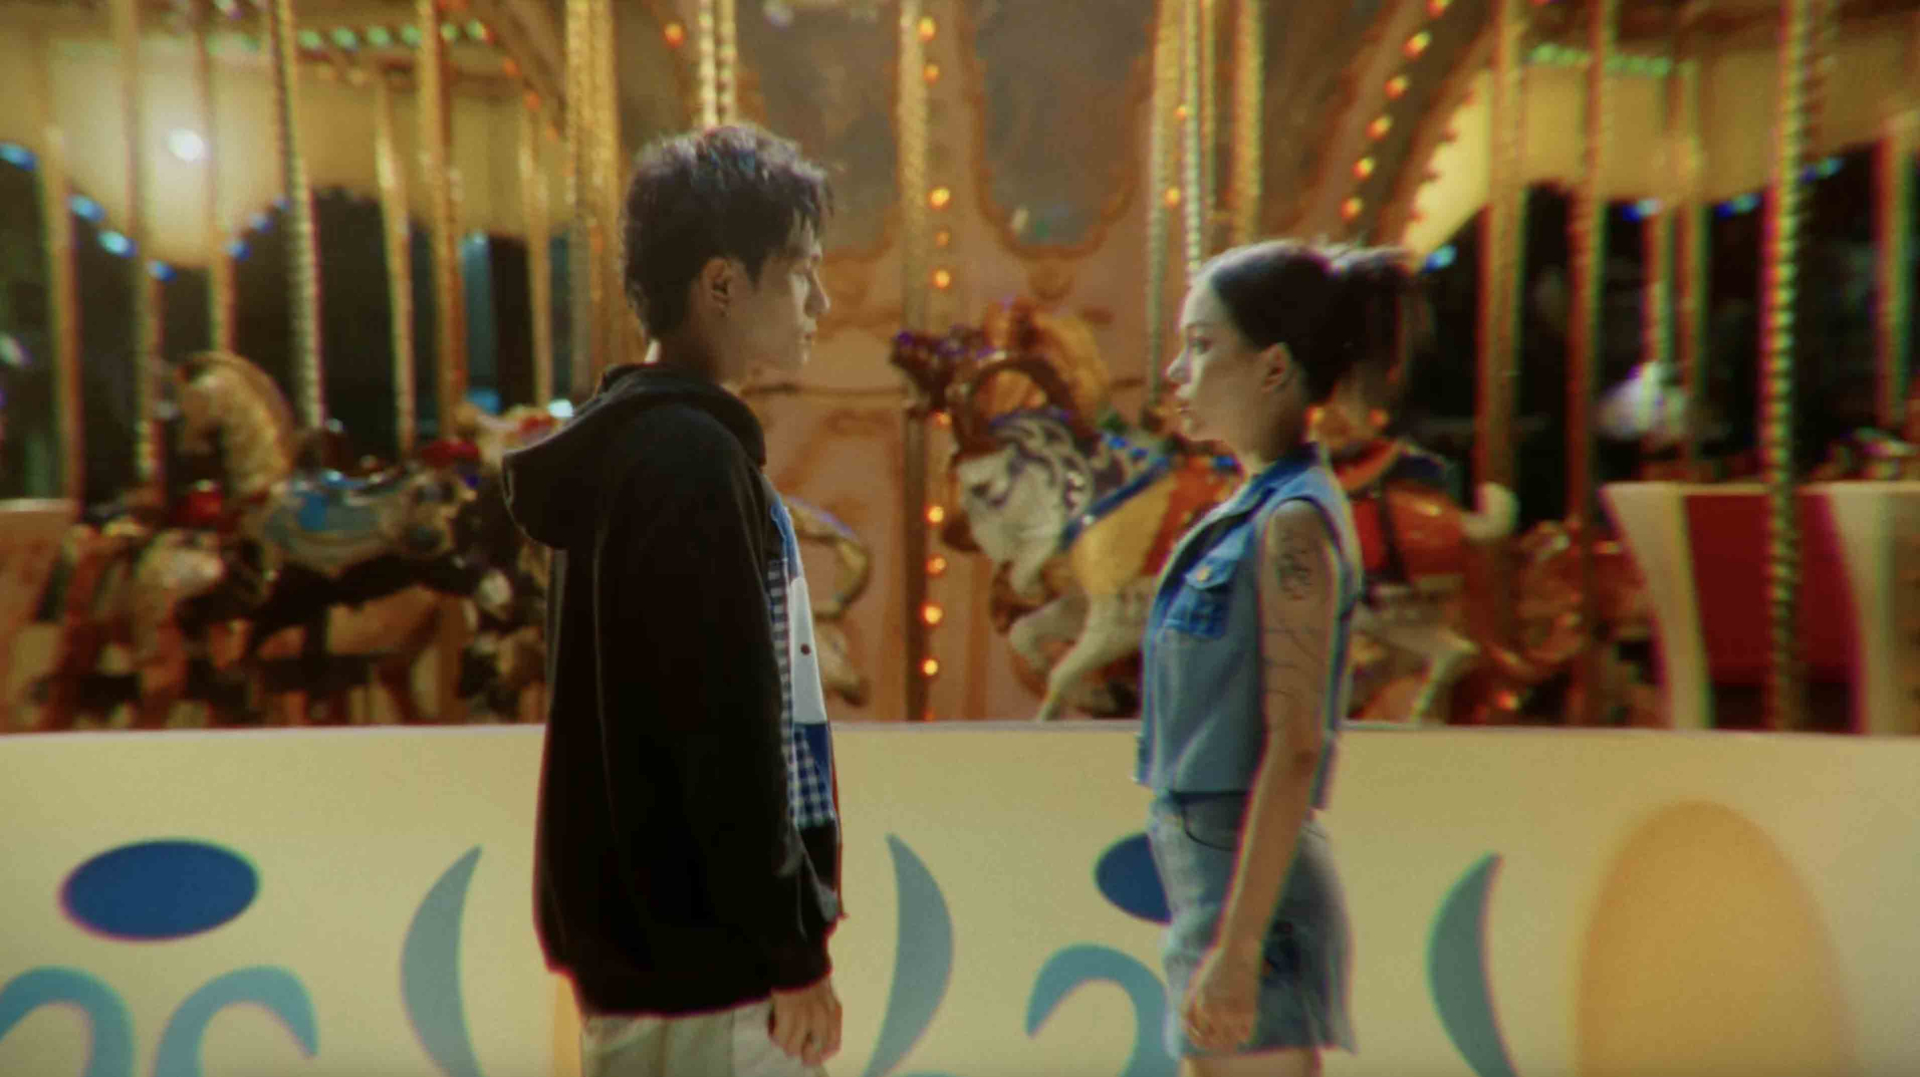 GREY D và Linh Ngọc Đàm nhá hàng loạt cảnh “nóng” trong Teaser MV ‘nhạt-fine’ - ảnh 1